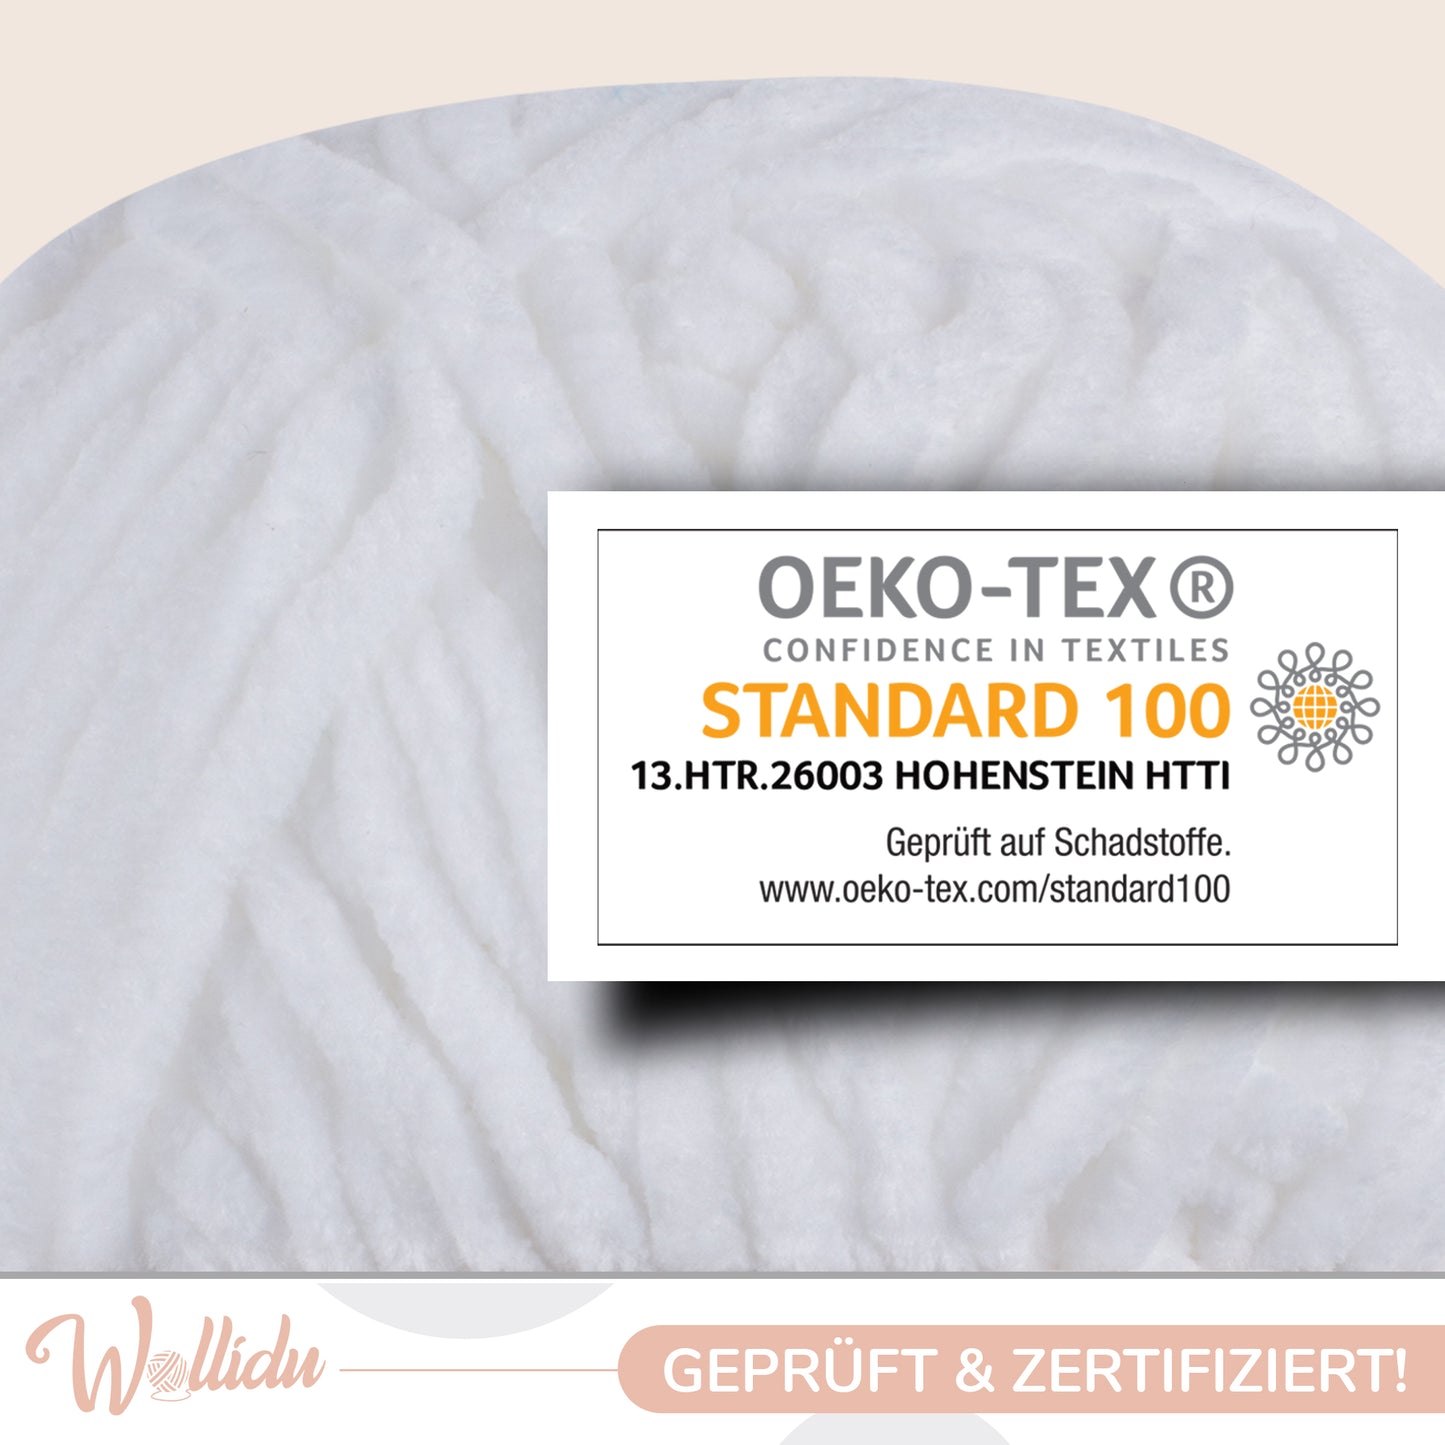 Wollidu Gina 100% Polyester 5 x 100g/120m - Weiß